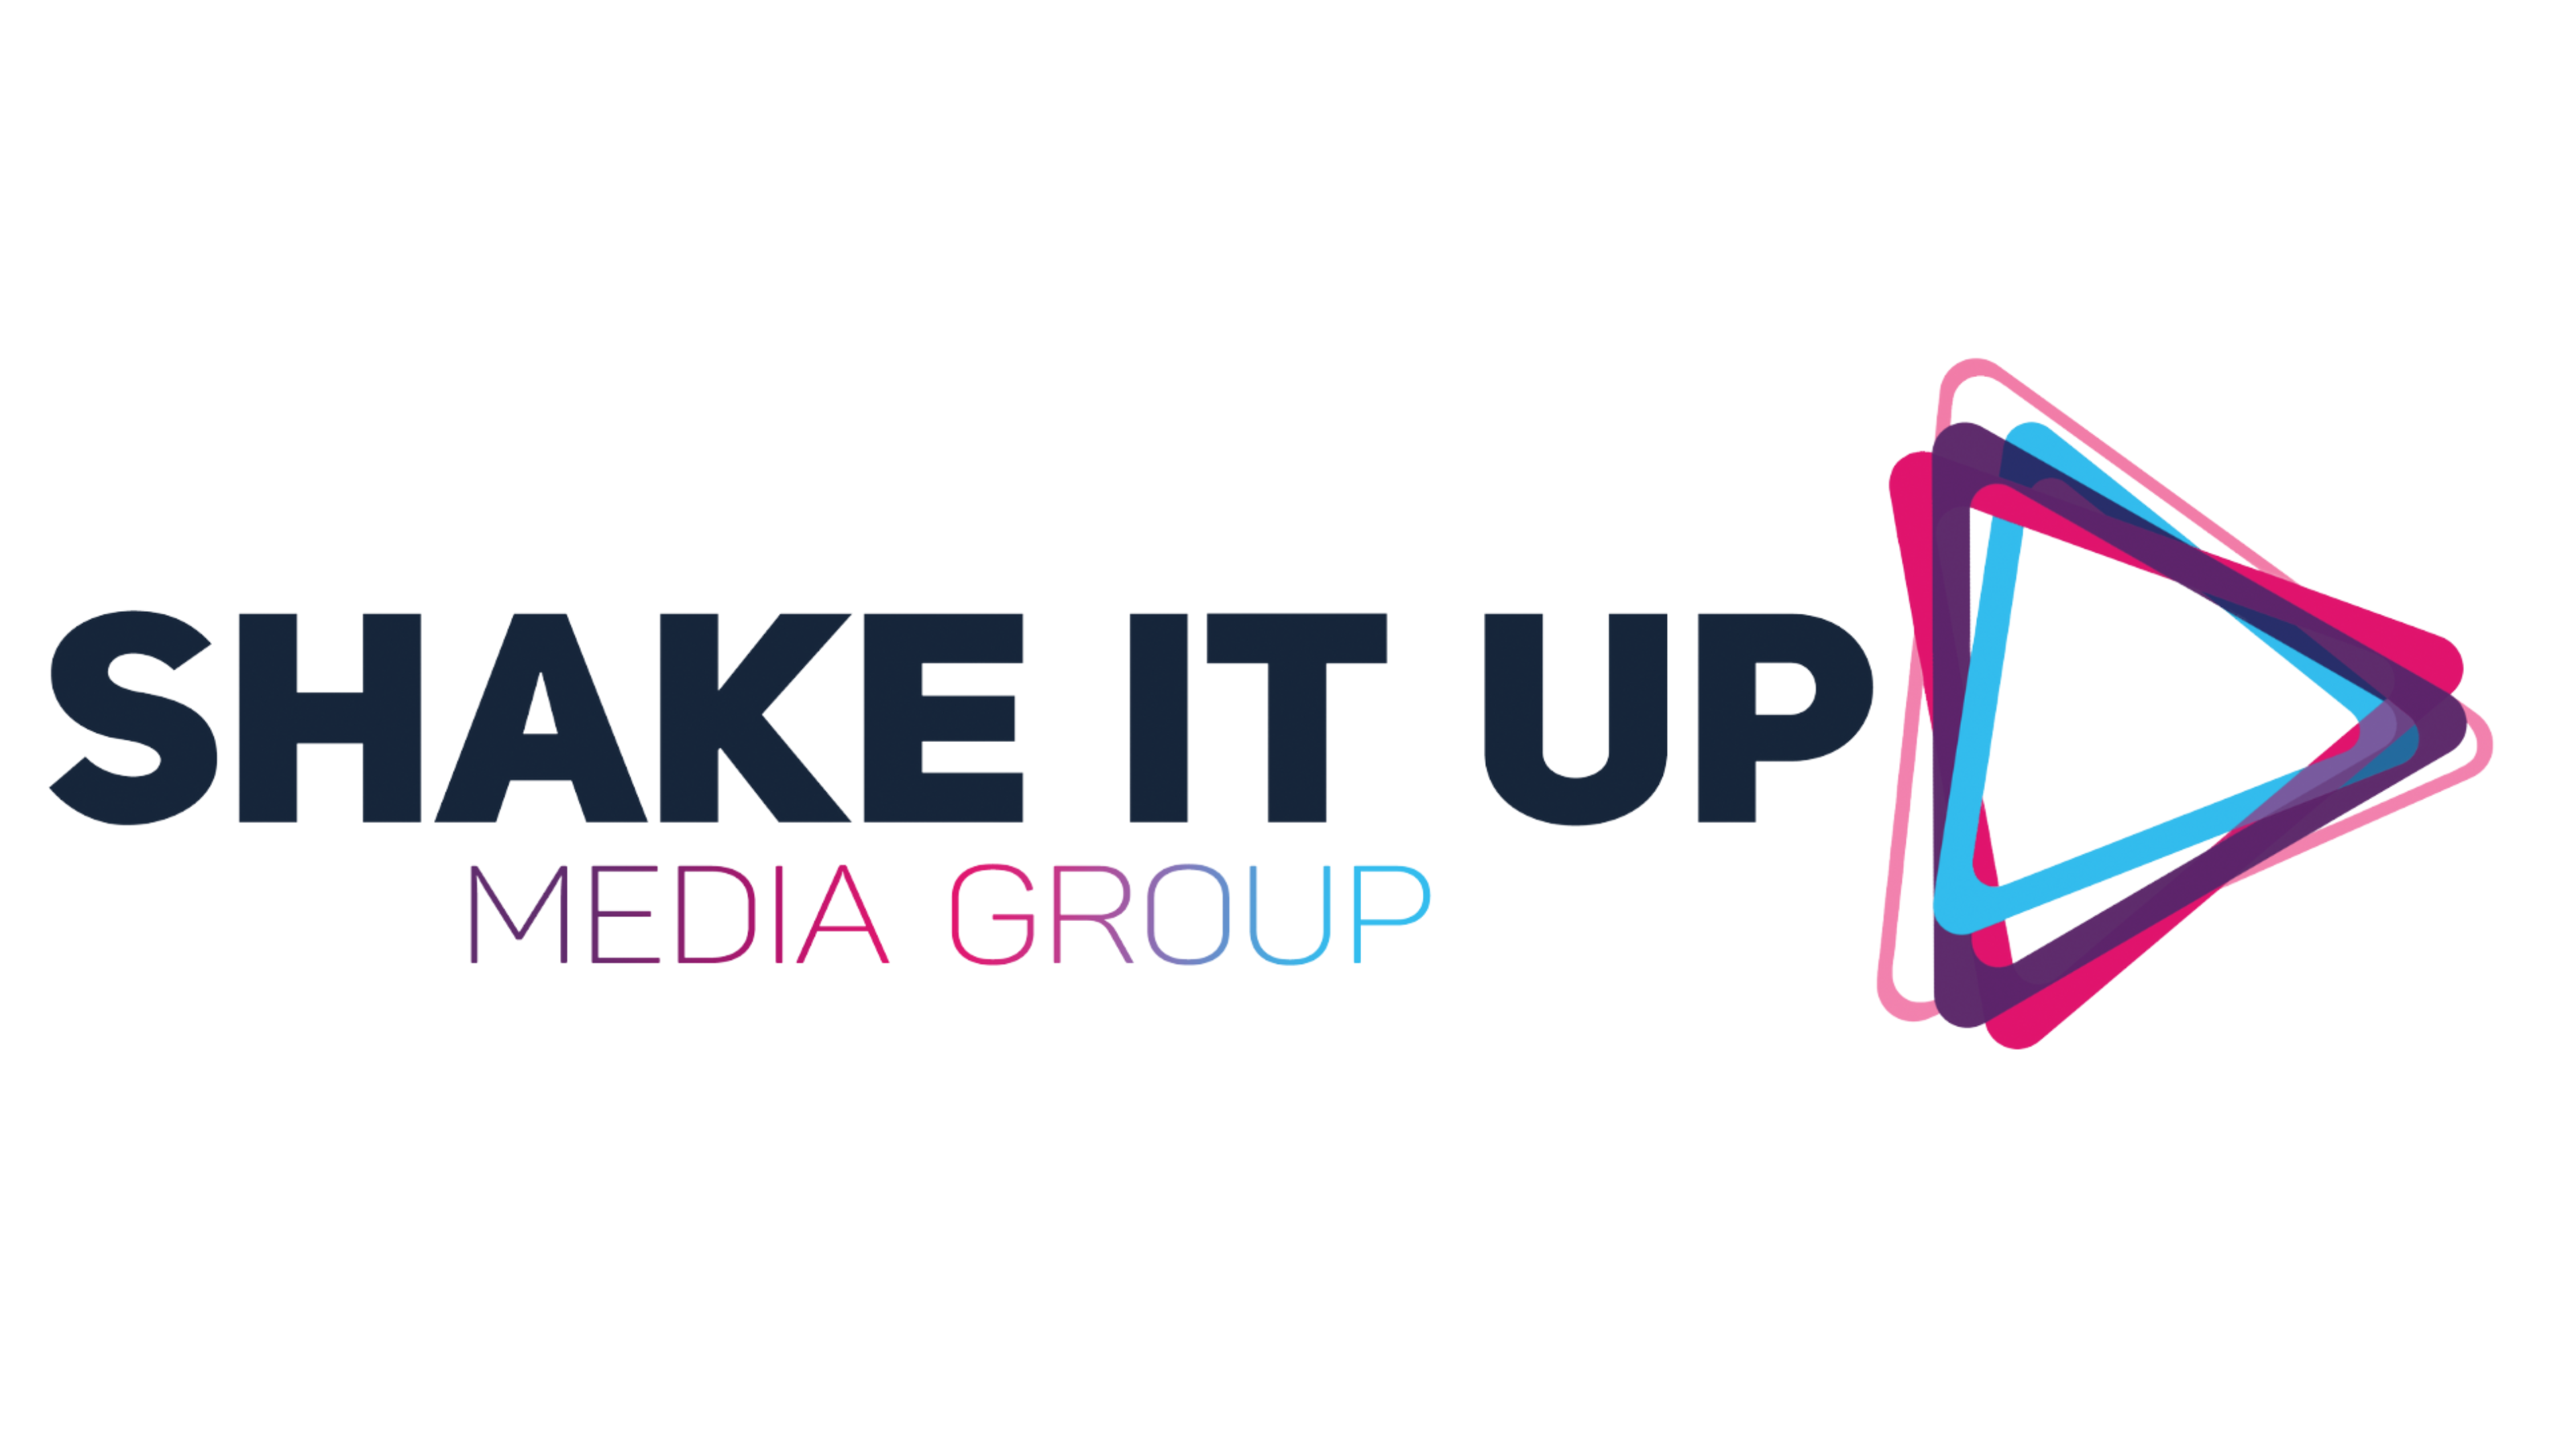 Shake it up media group logo